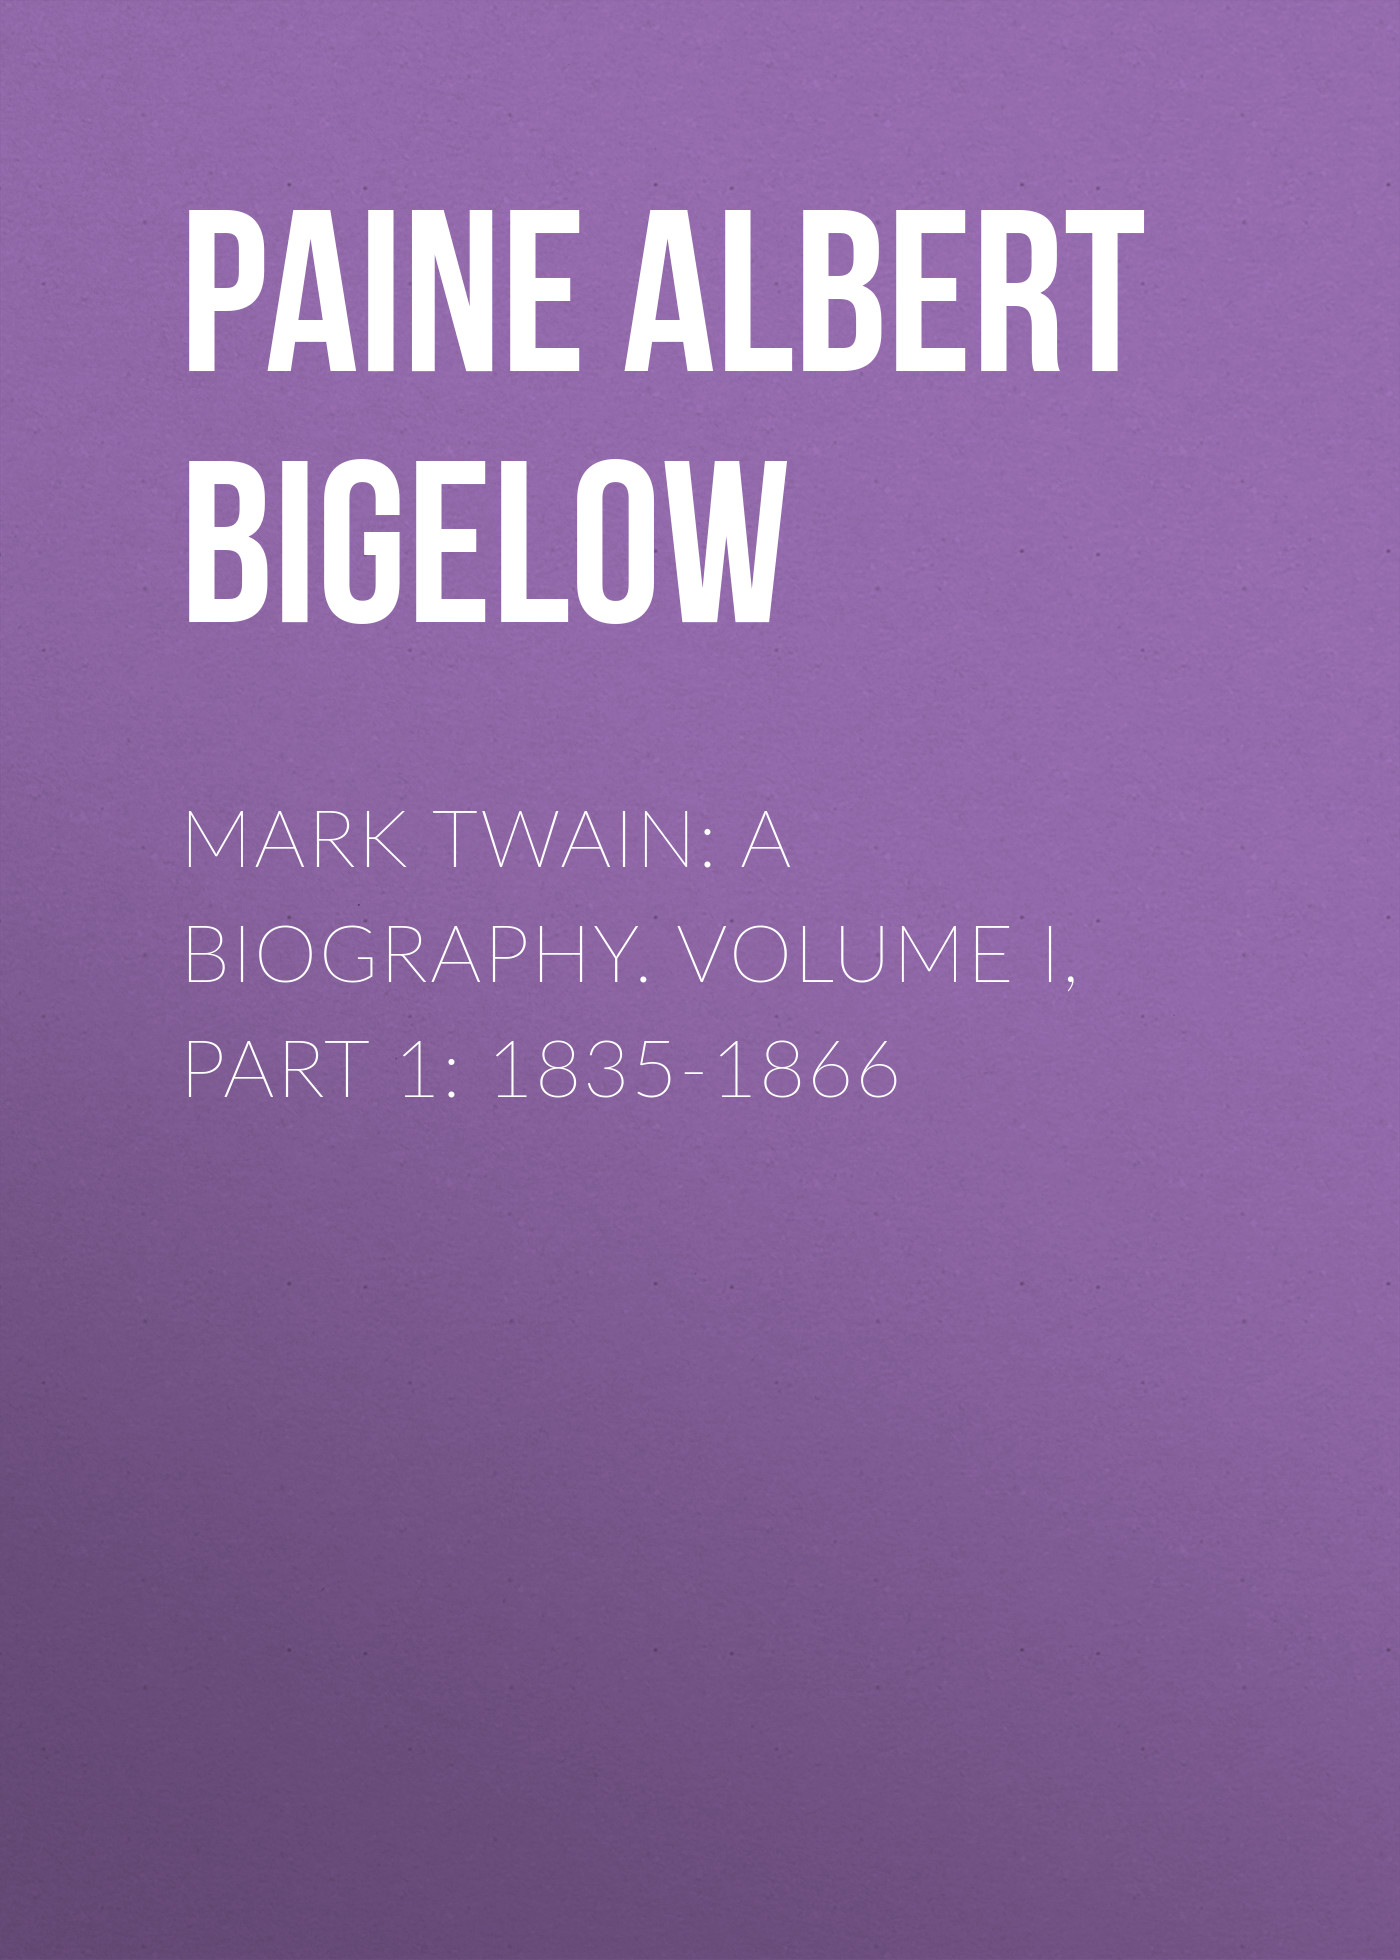 Книга Mark Twain: A Biography. Volume I, Part 1: 1835-1866 из серии , созданная Albert Paine, может относится к жанру Биографии и Мемуары, Зарубежная старинная литература. Стоимость электронной книги Mark Twain: A Biography. Volume I, Part 1: 1835-1866 с идентификатором 34838302 составляет 0 руб.